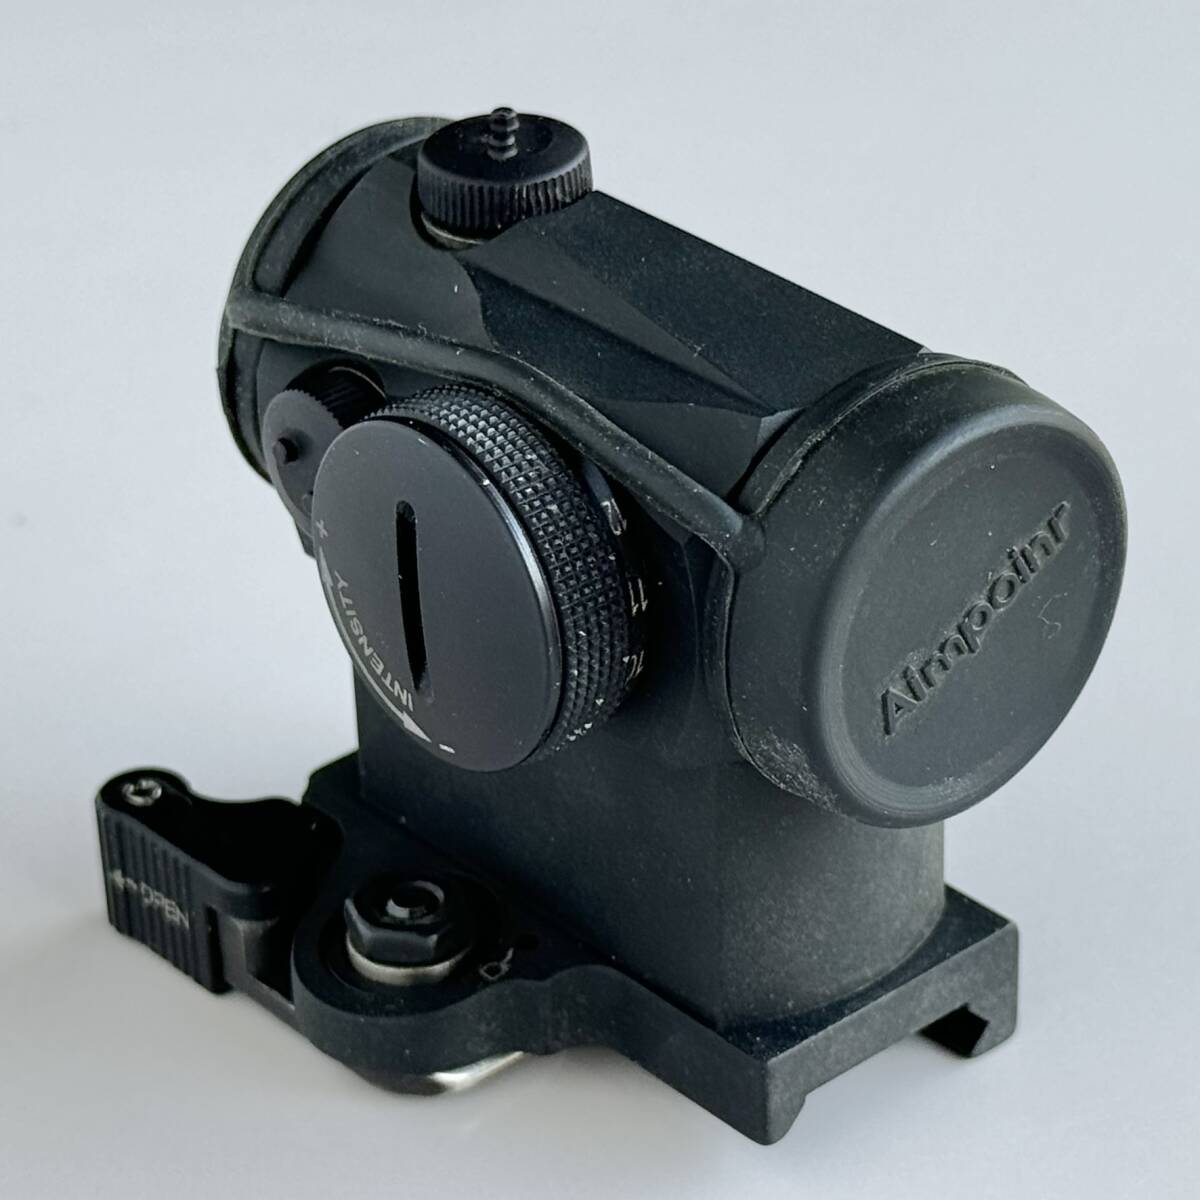 【実物】Aimpoint Micro T-1 Red Dot Reflex Sight + Larue Tactical LT660【Used】の画像1